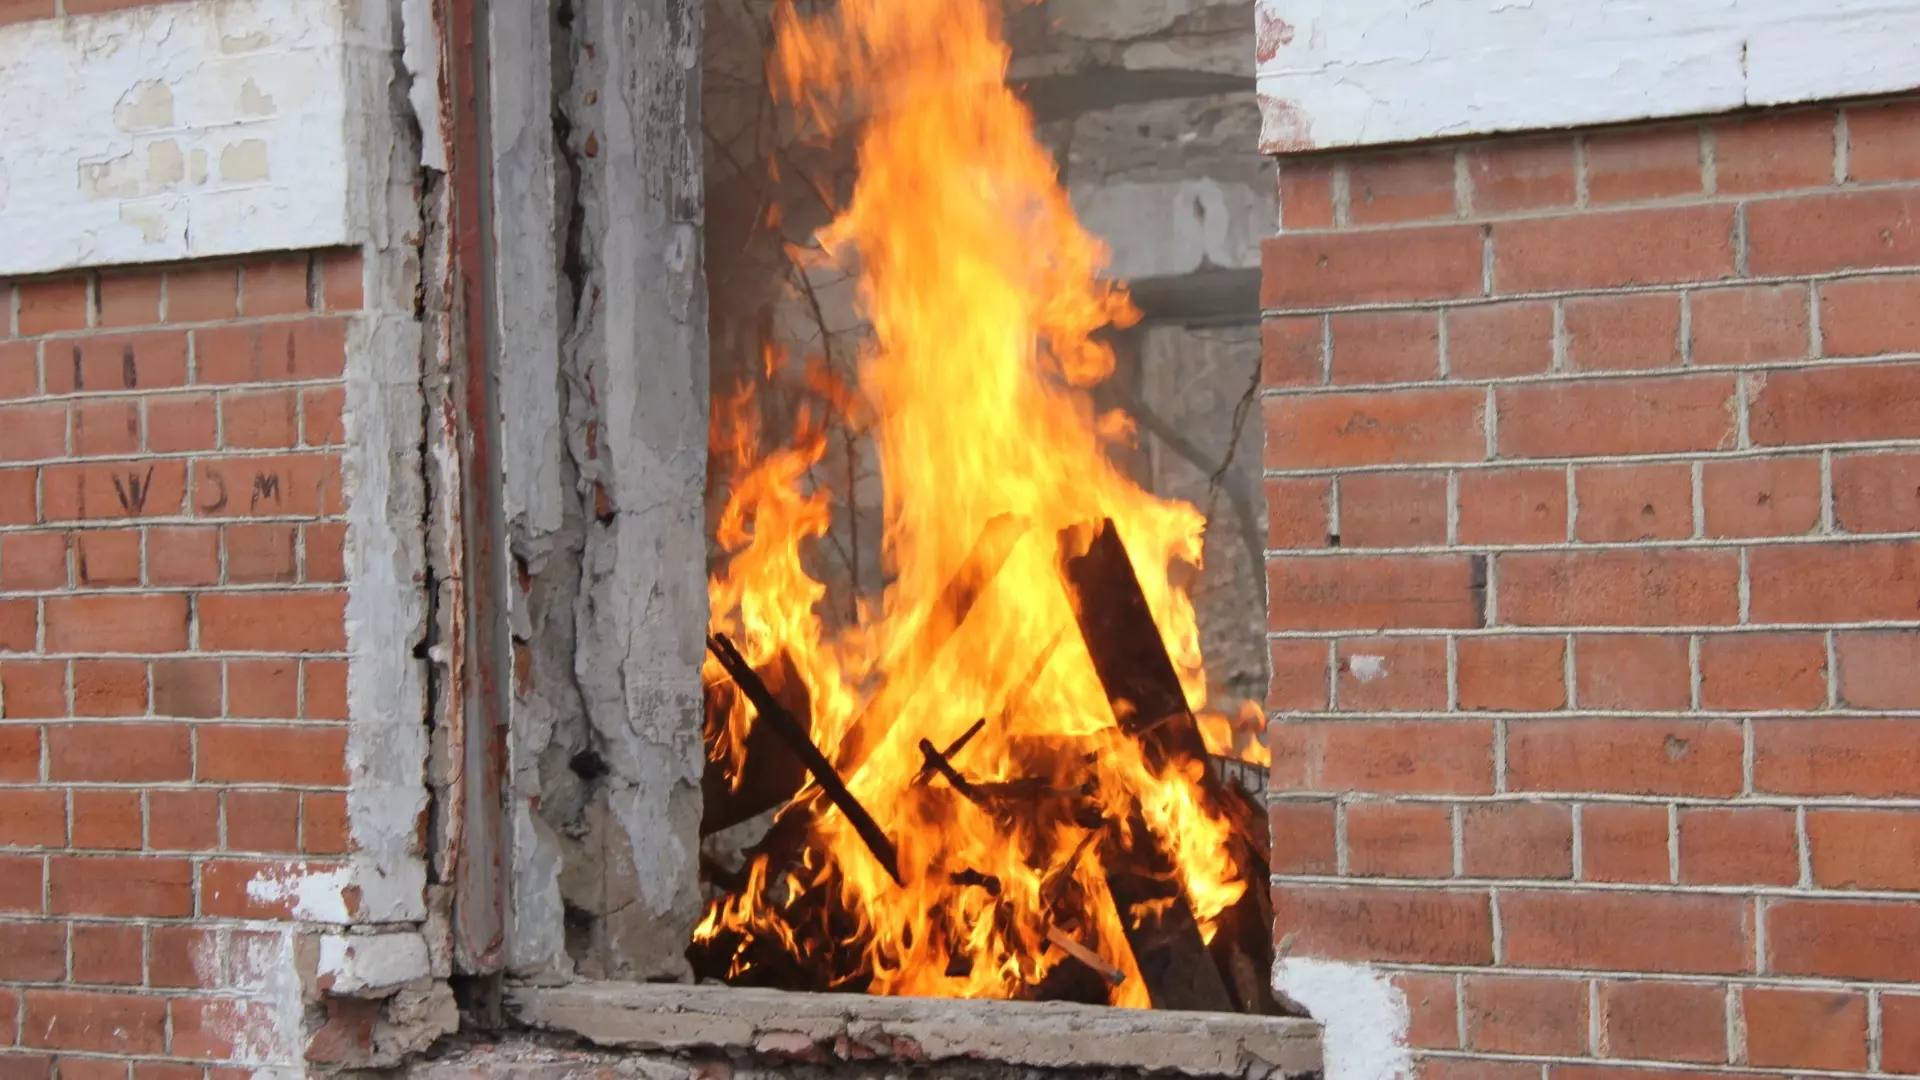 Пожарные опубликовали снимки дачного дома, где в огне пострадала женщина. 